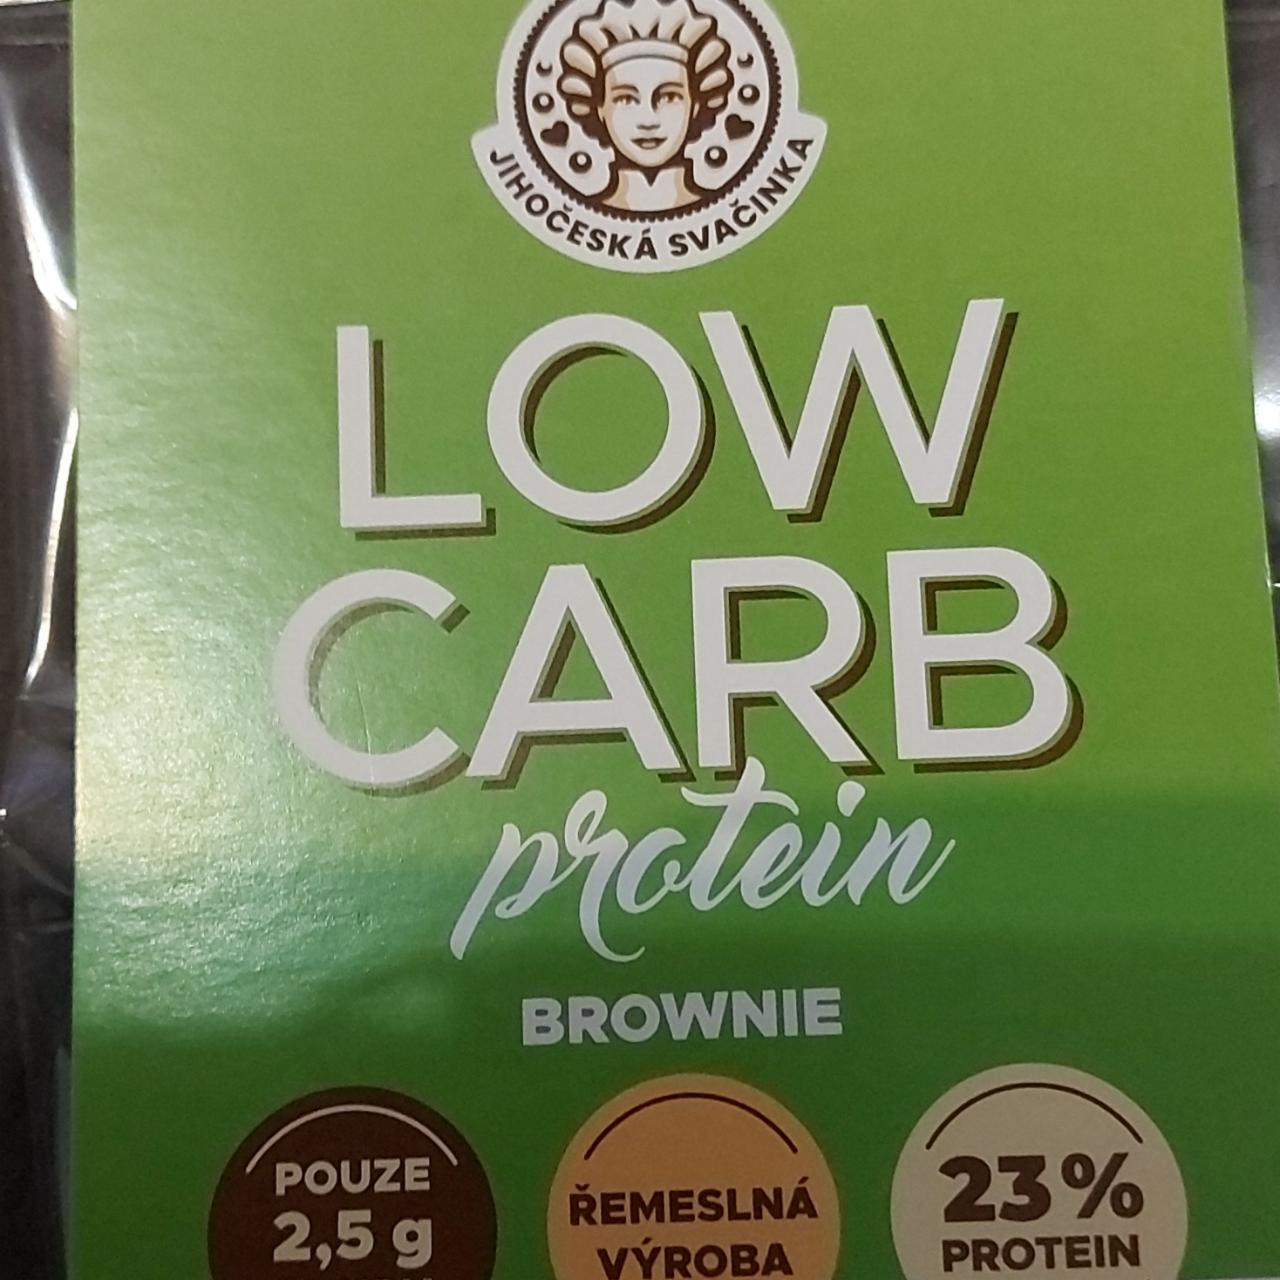 Fotografie - Proteinová srdíčka Brownie low carb Jihočeská svačinka